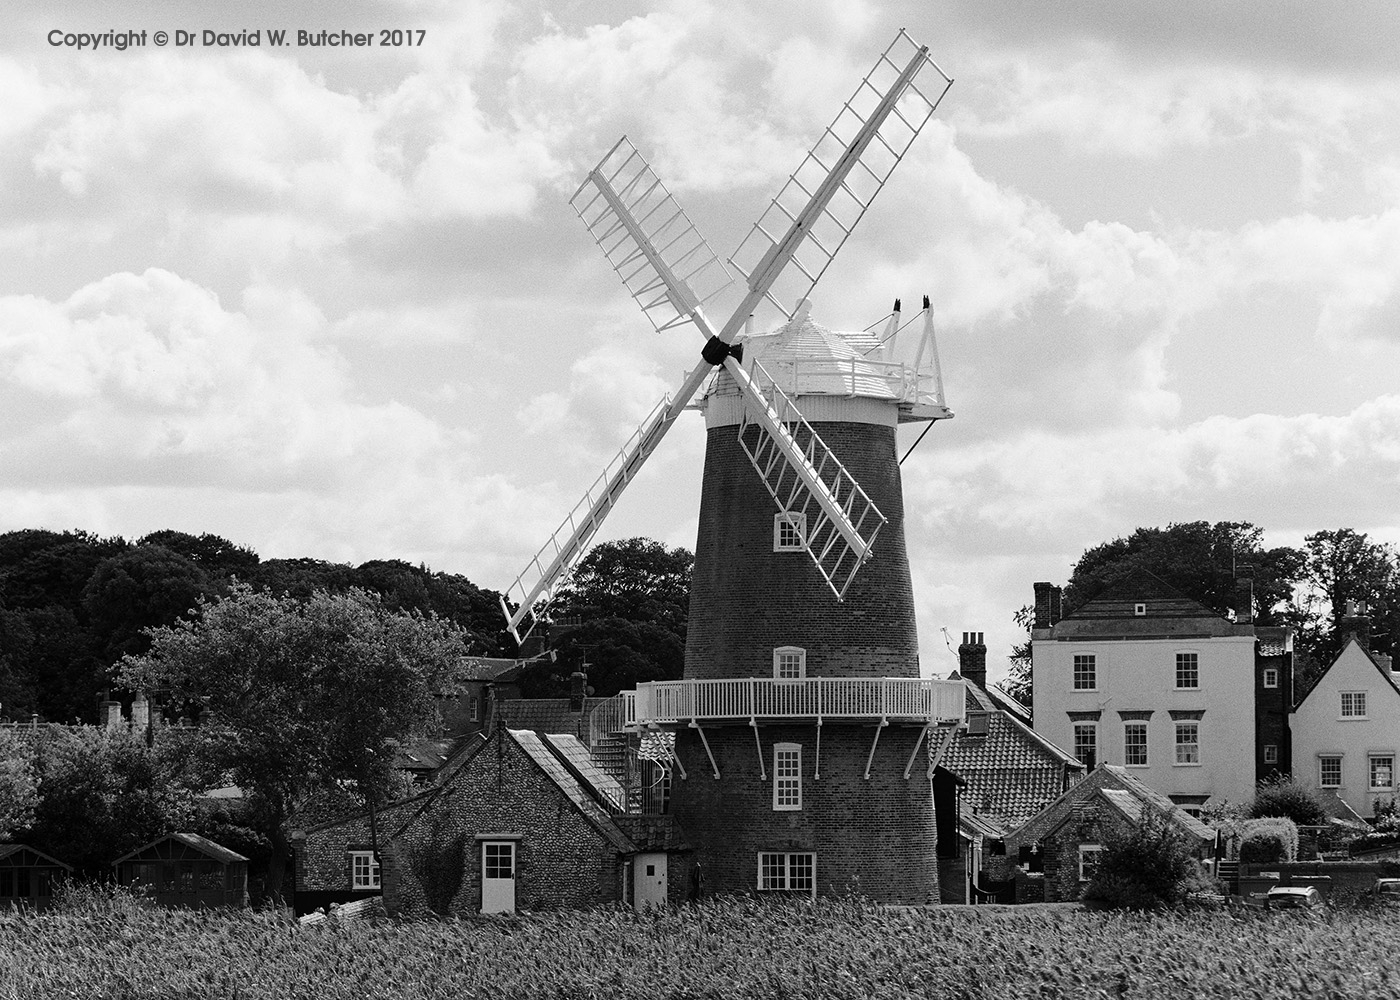 Cley Windmill, Blakeney, Norfolk